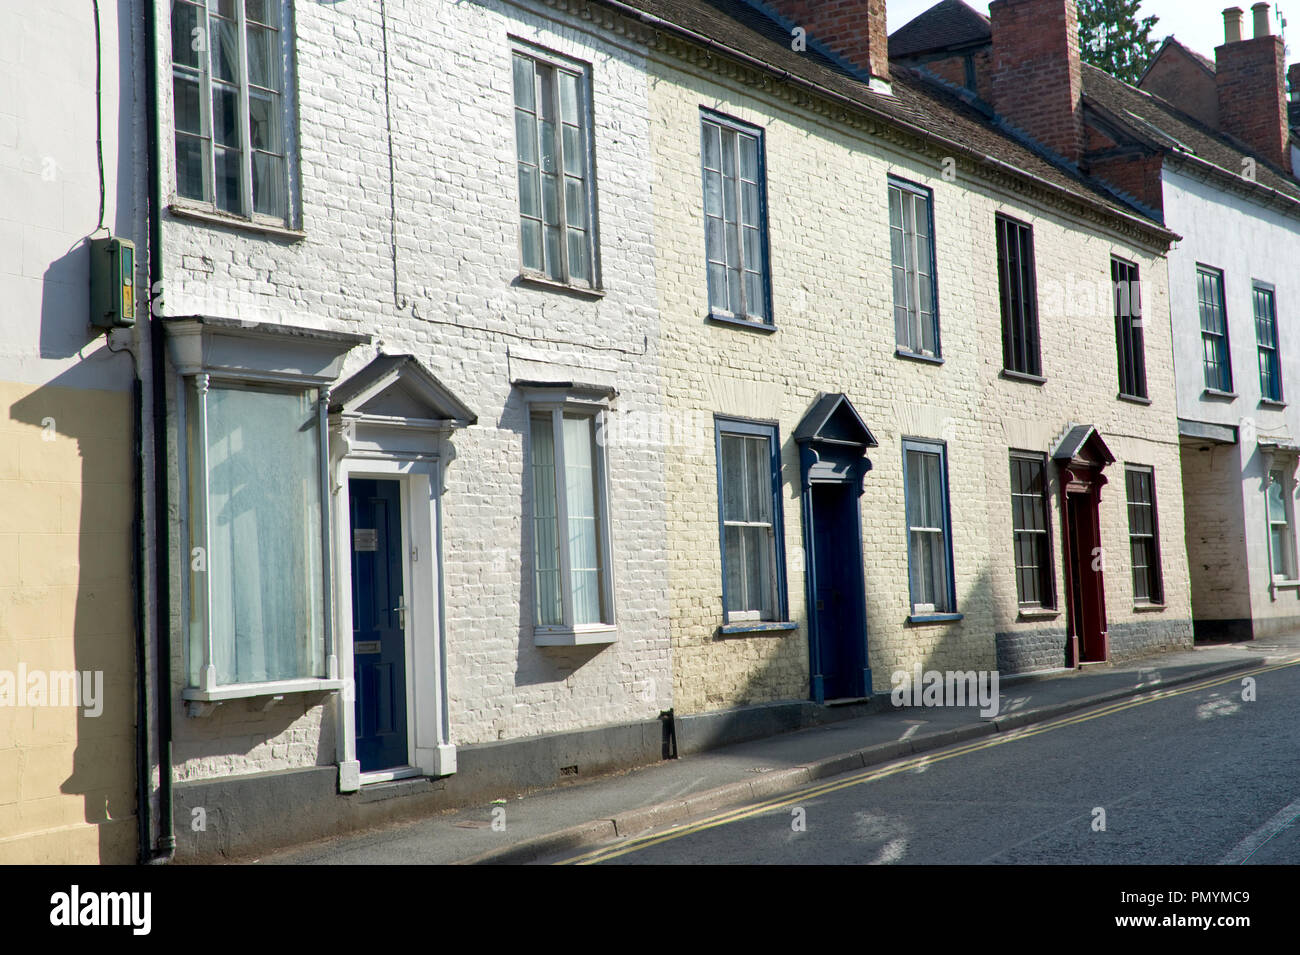 Terrace of roadside houses in Ledbury Herefordshire England UK Stock Photo